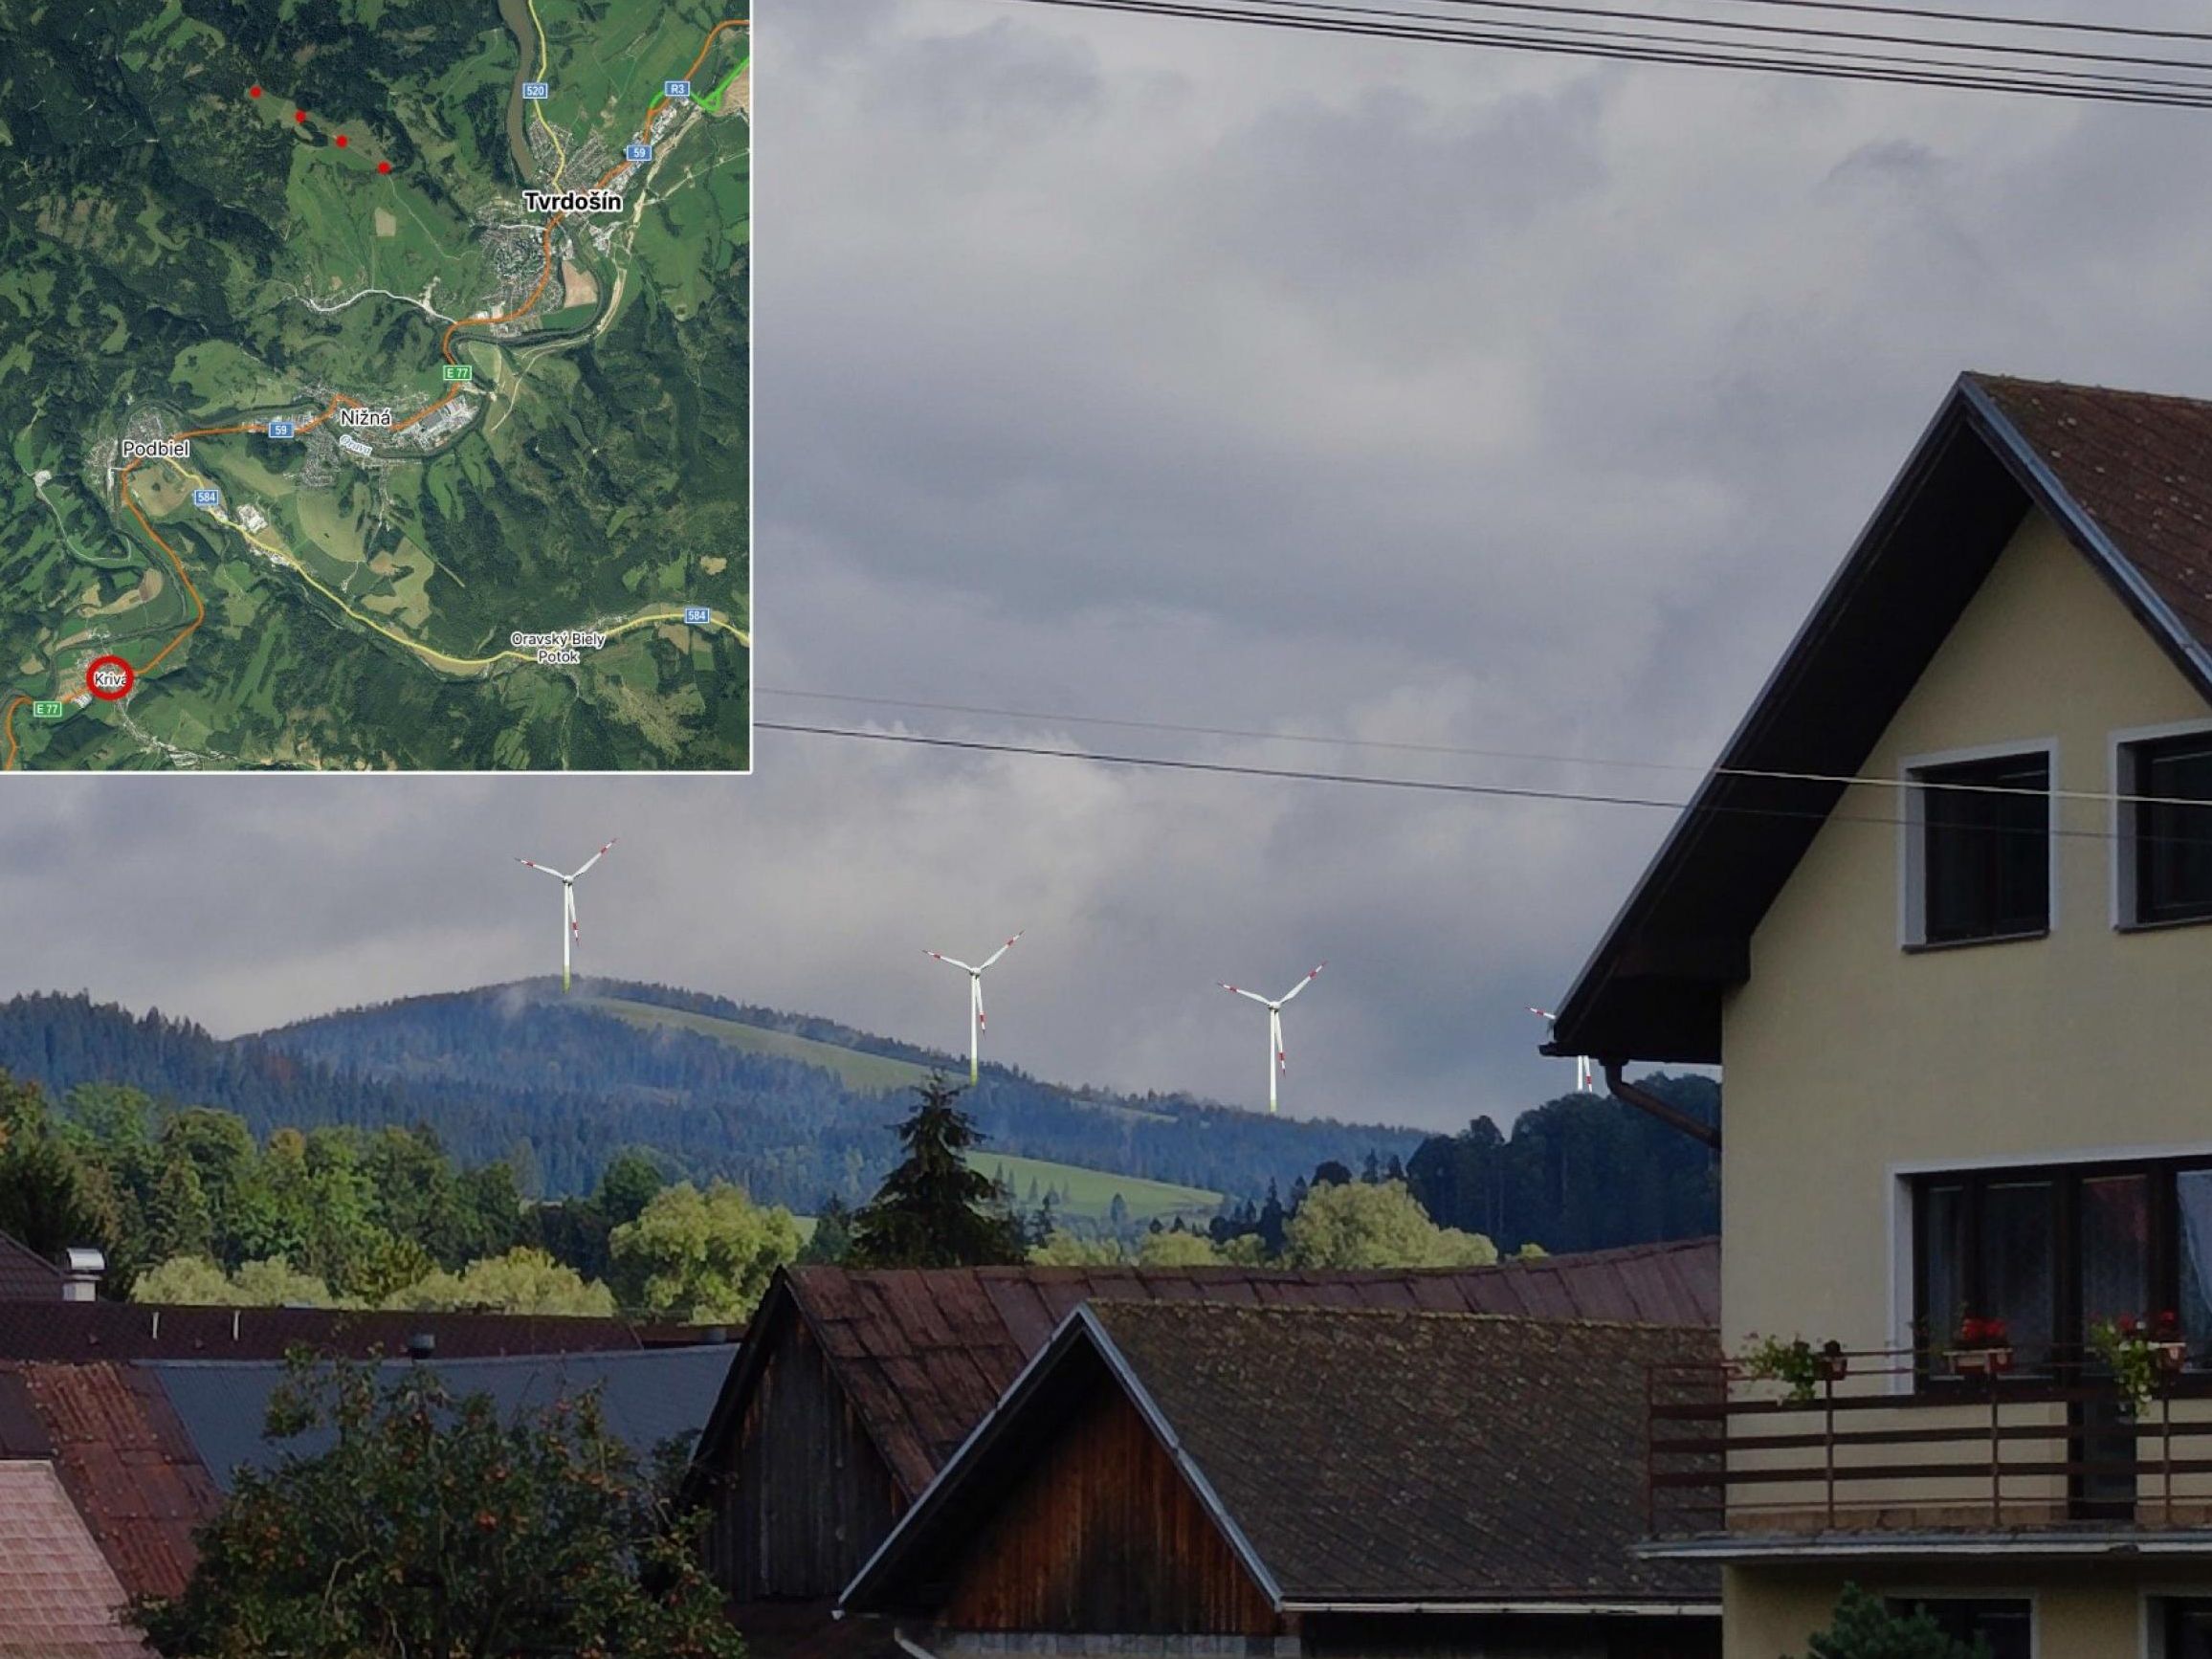 Vizualizácia pohľadu z obce Krivá, variant so 4 turbínami